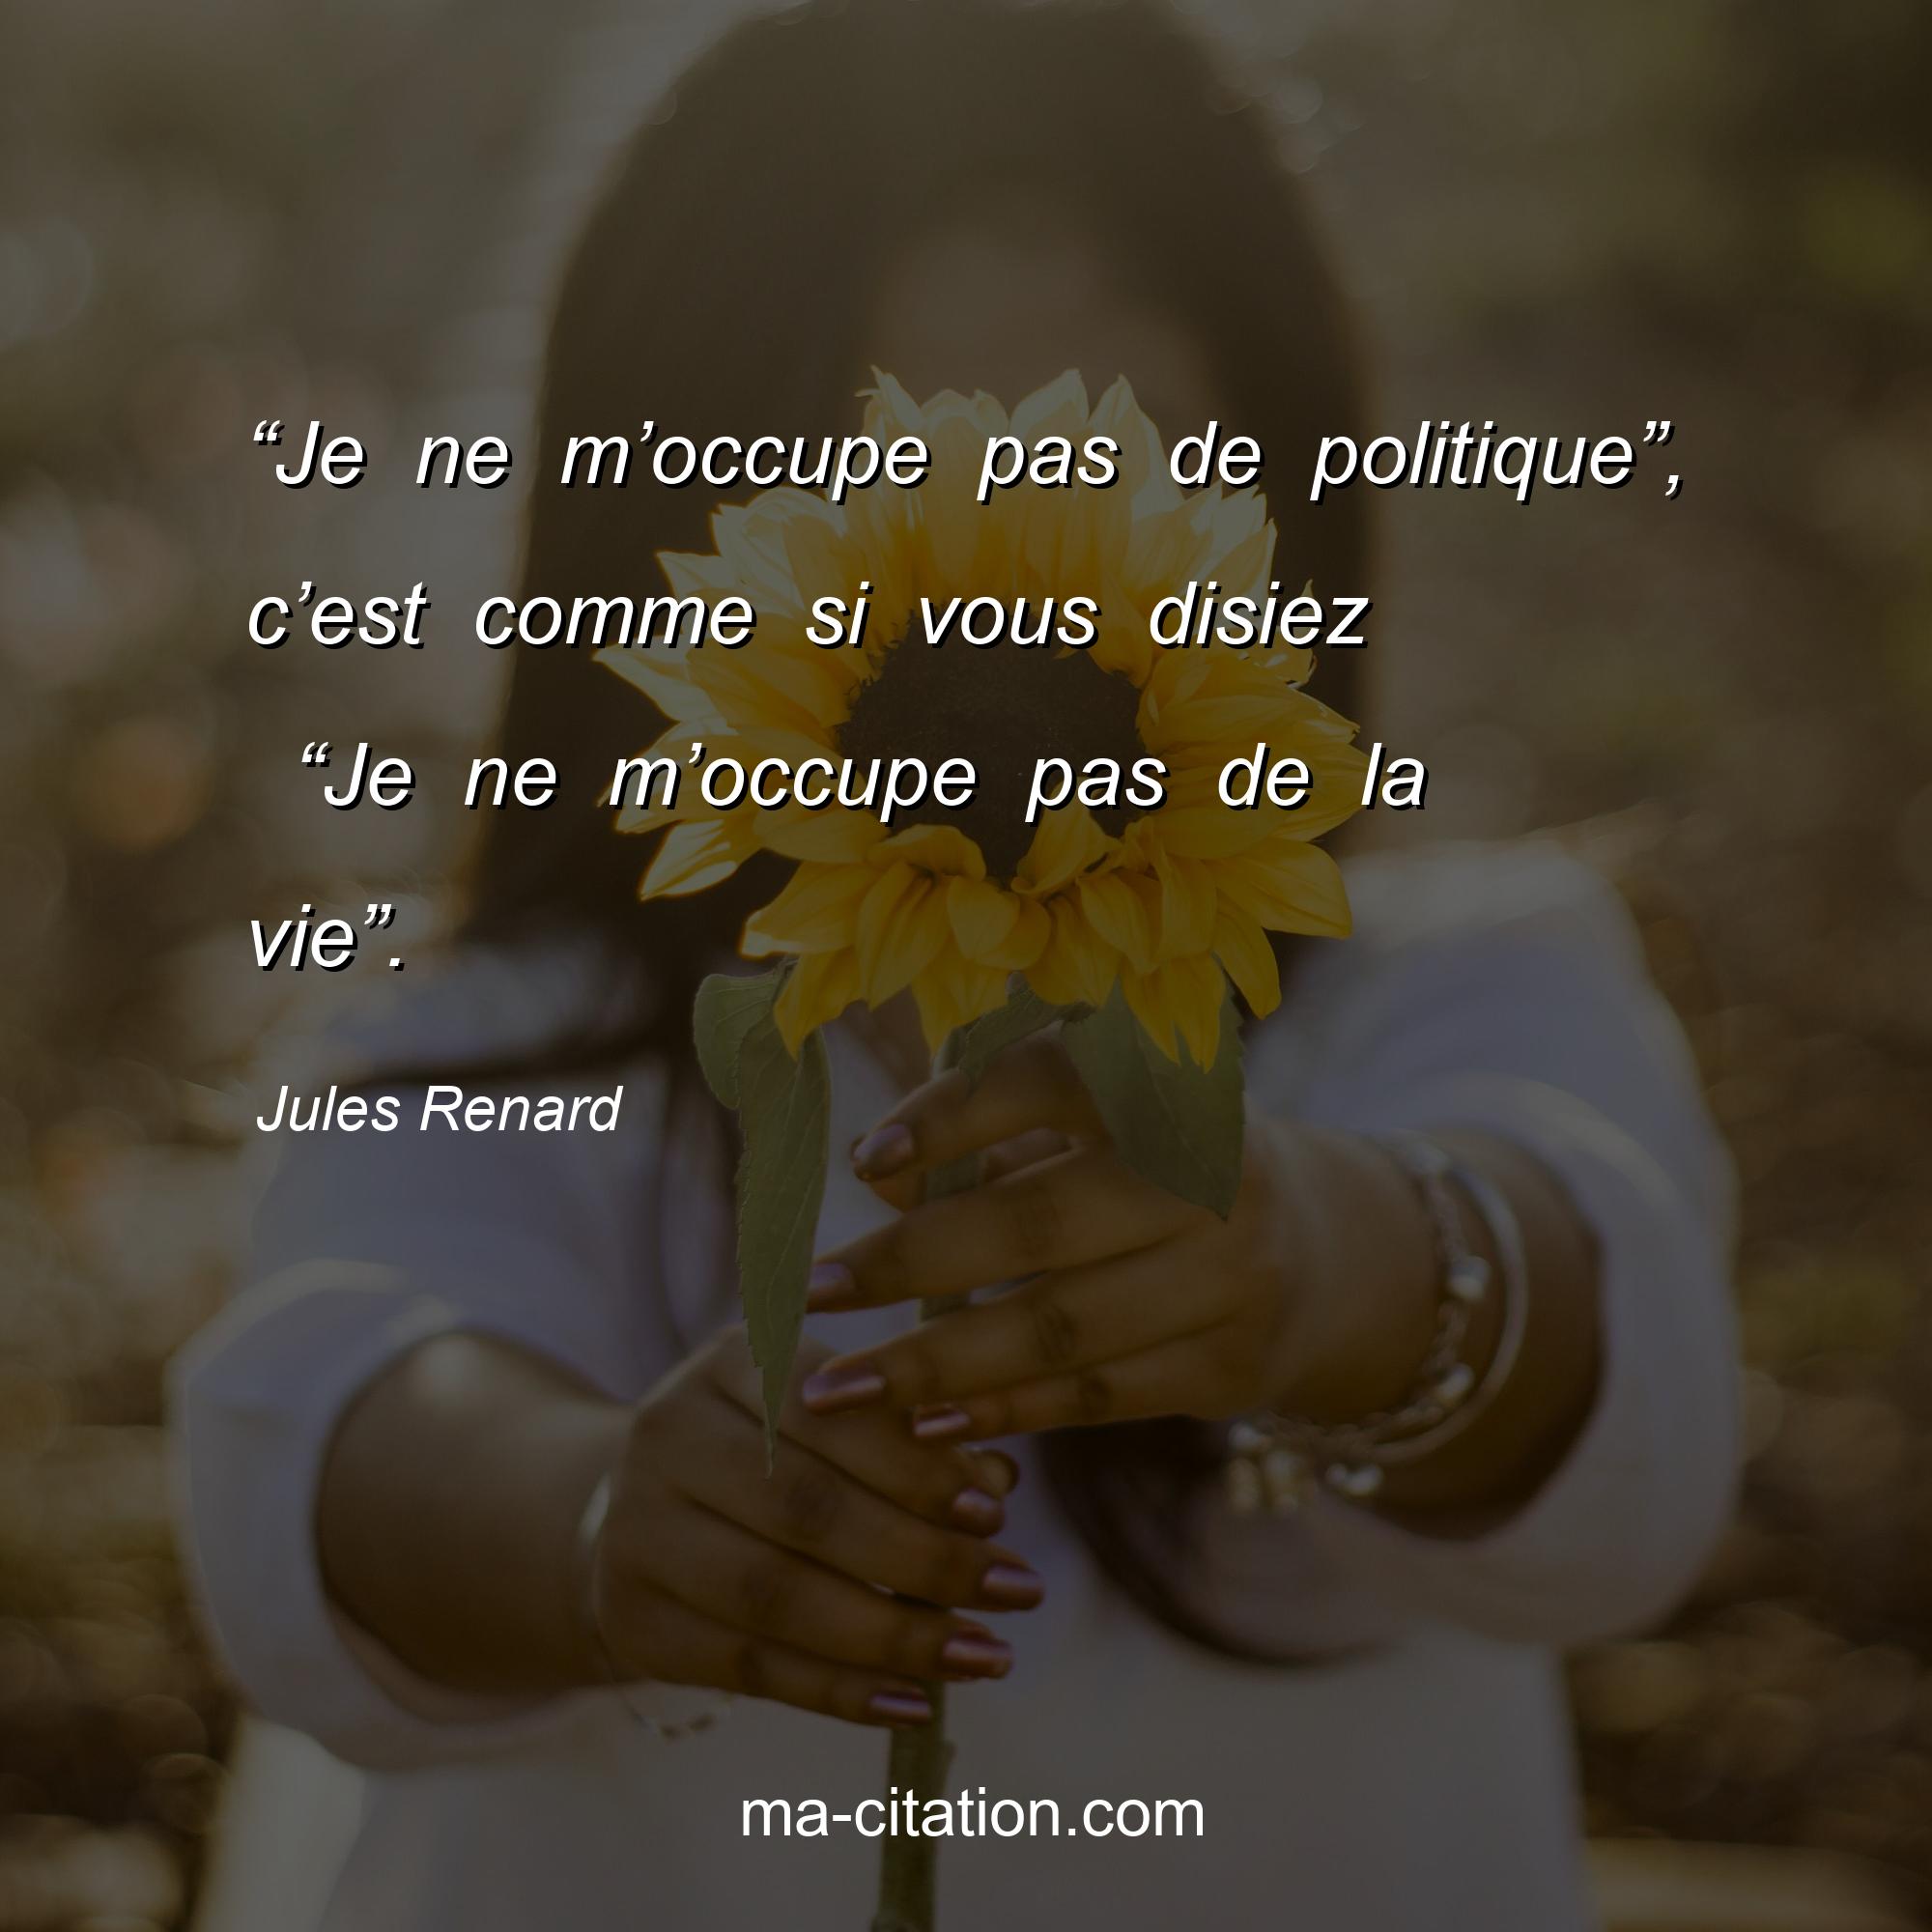 Jules Renard : “Je ne m’occupe pas de politique”, c’est comme si vous disiez  “Je ne m’occupe pas de la vie”.